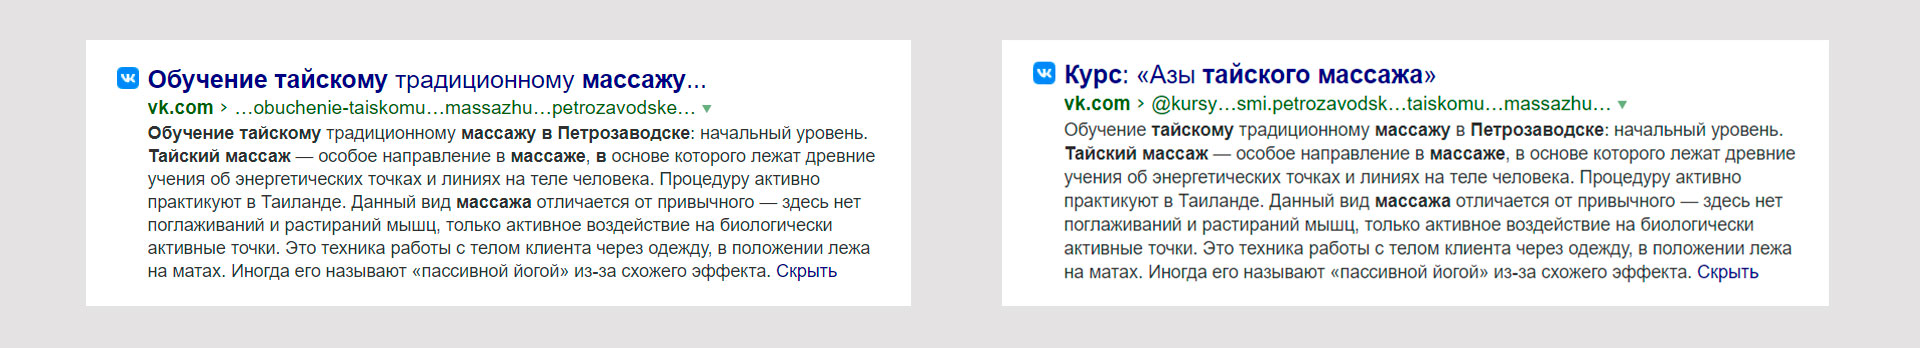 Индексирование Яндексом статьи ВКонтакте.